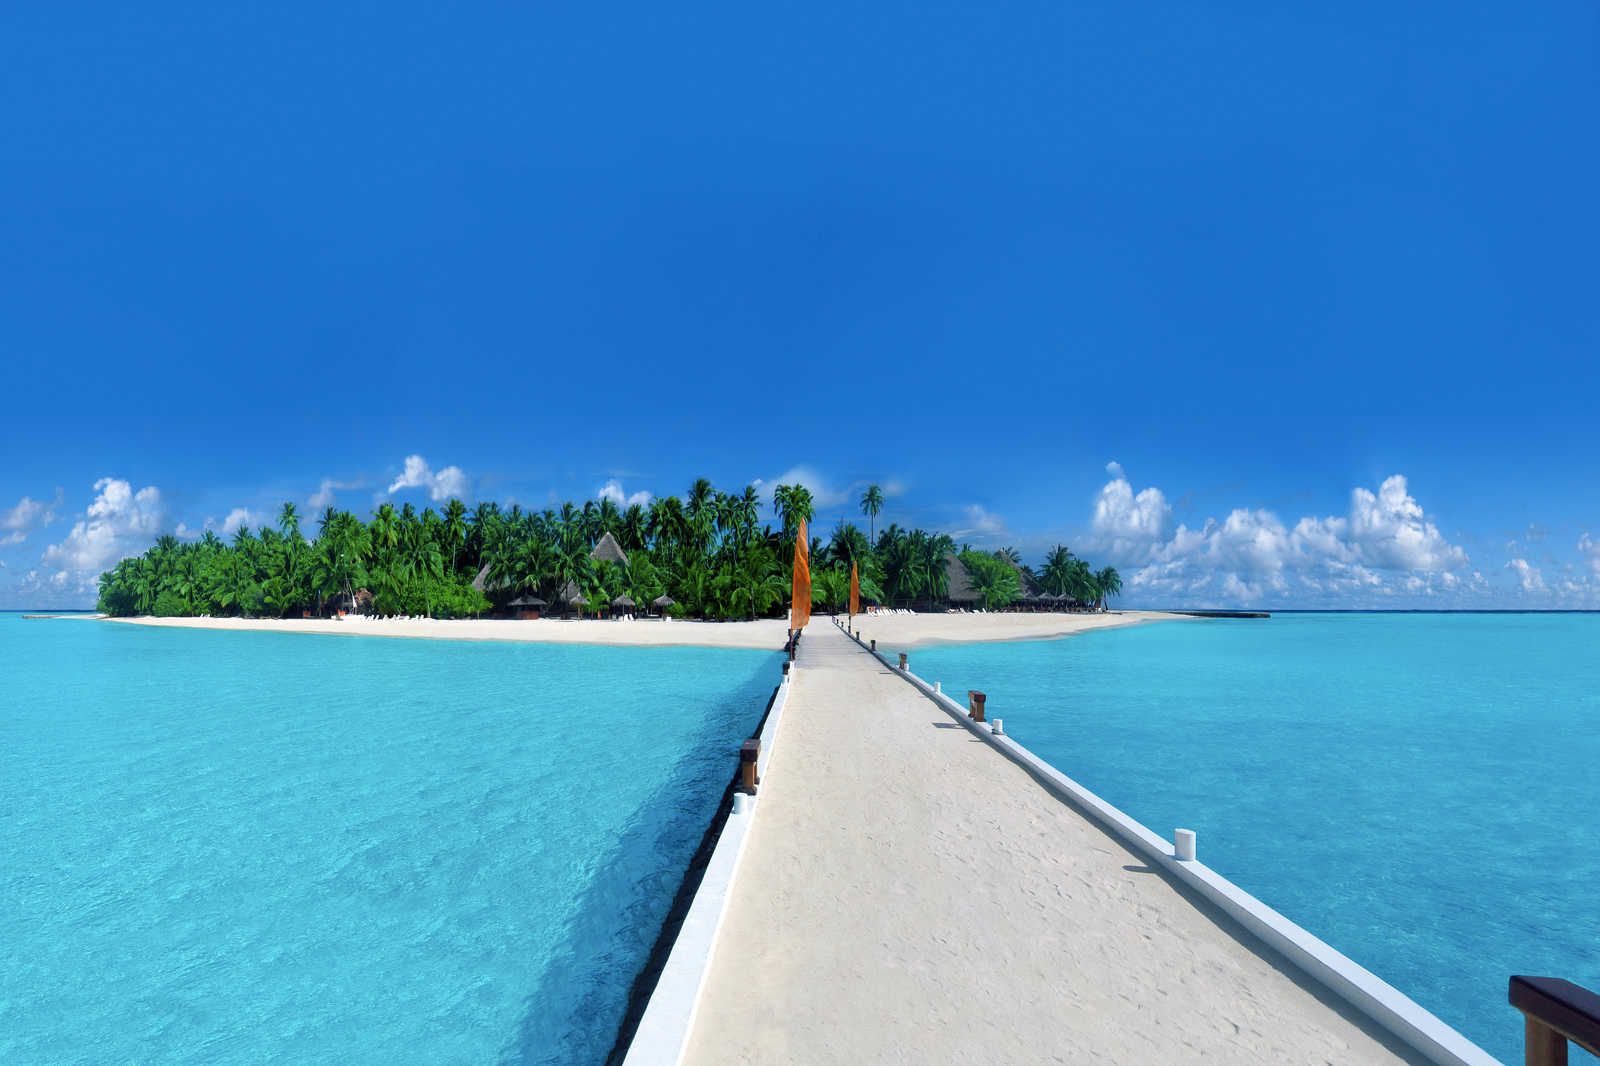             Toile Île avec passerelle vers la plage - 0,90 m x 0,60 m
        